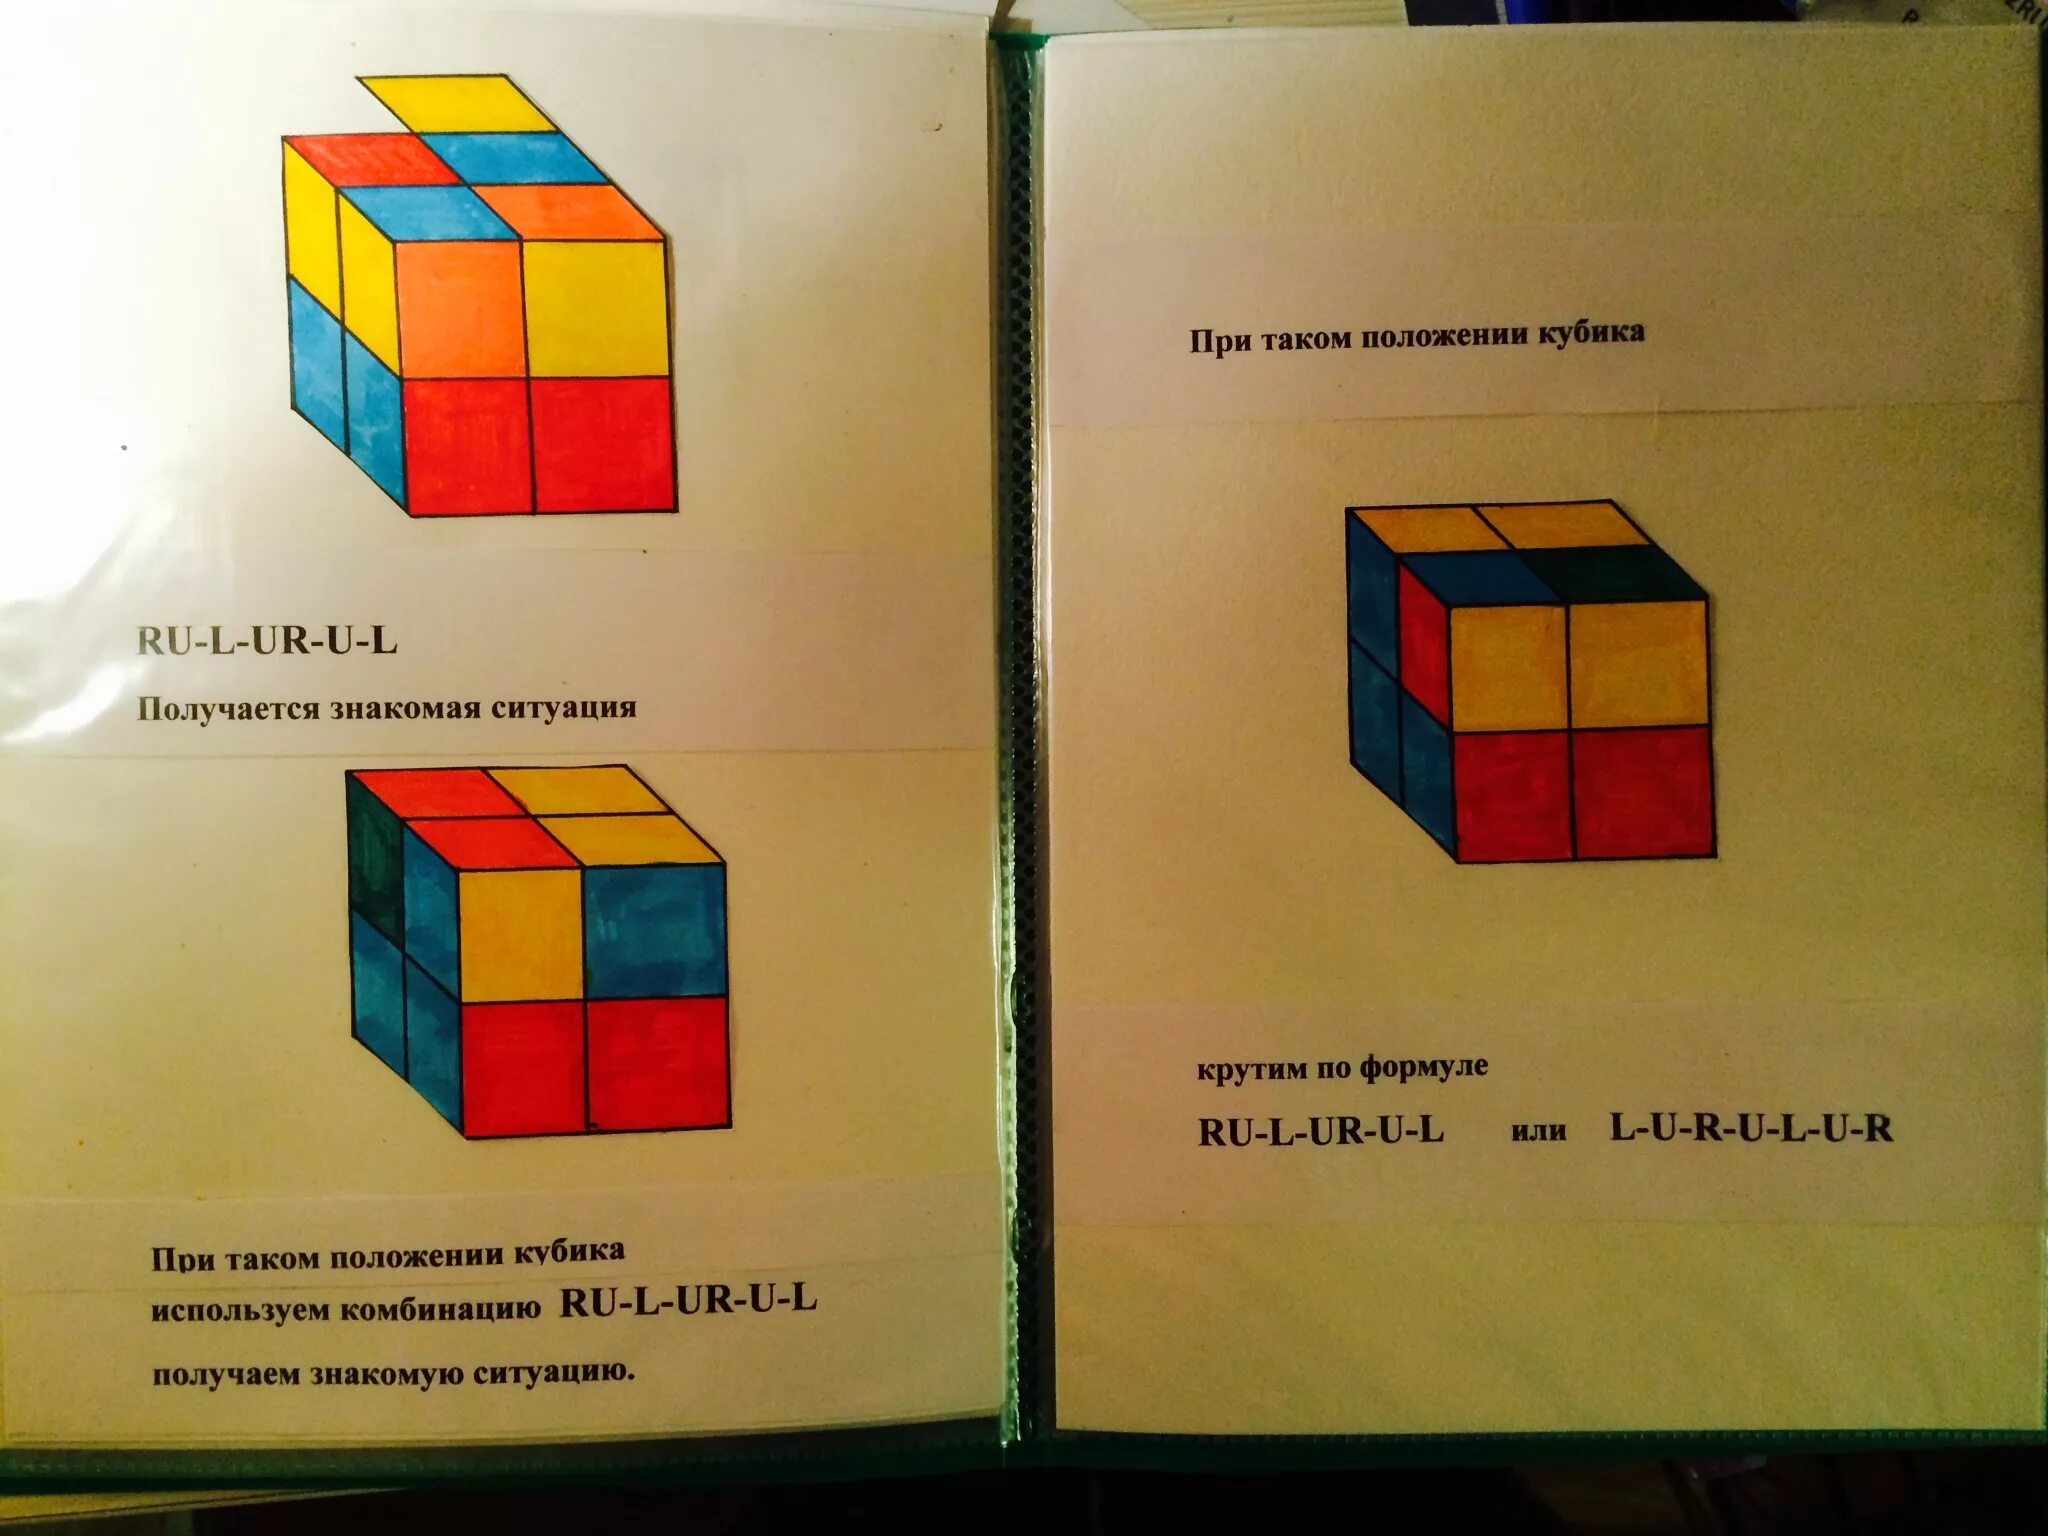 Формула сбора кубика Рубика 2х2. Кубик рубик 2х2 формулы сборки кубика. Алгоритм сборки кубика Рубика 2 на 2. Формула сборки кубика Рубика 2 на 2.